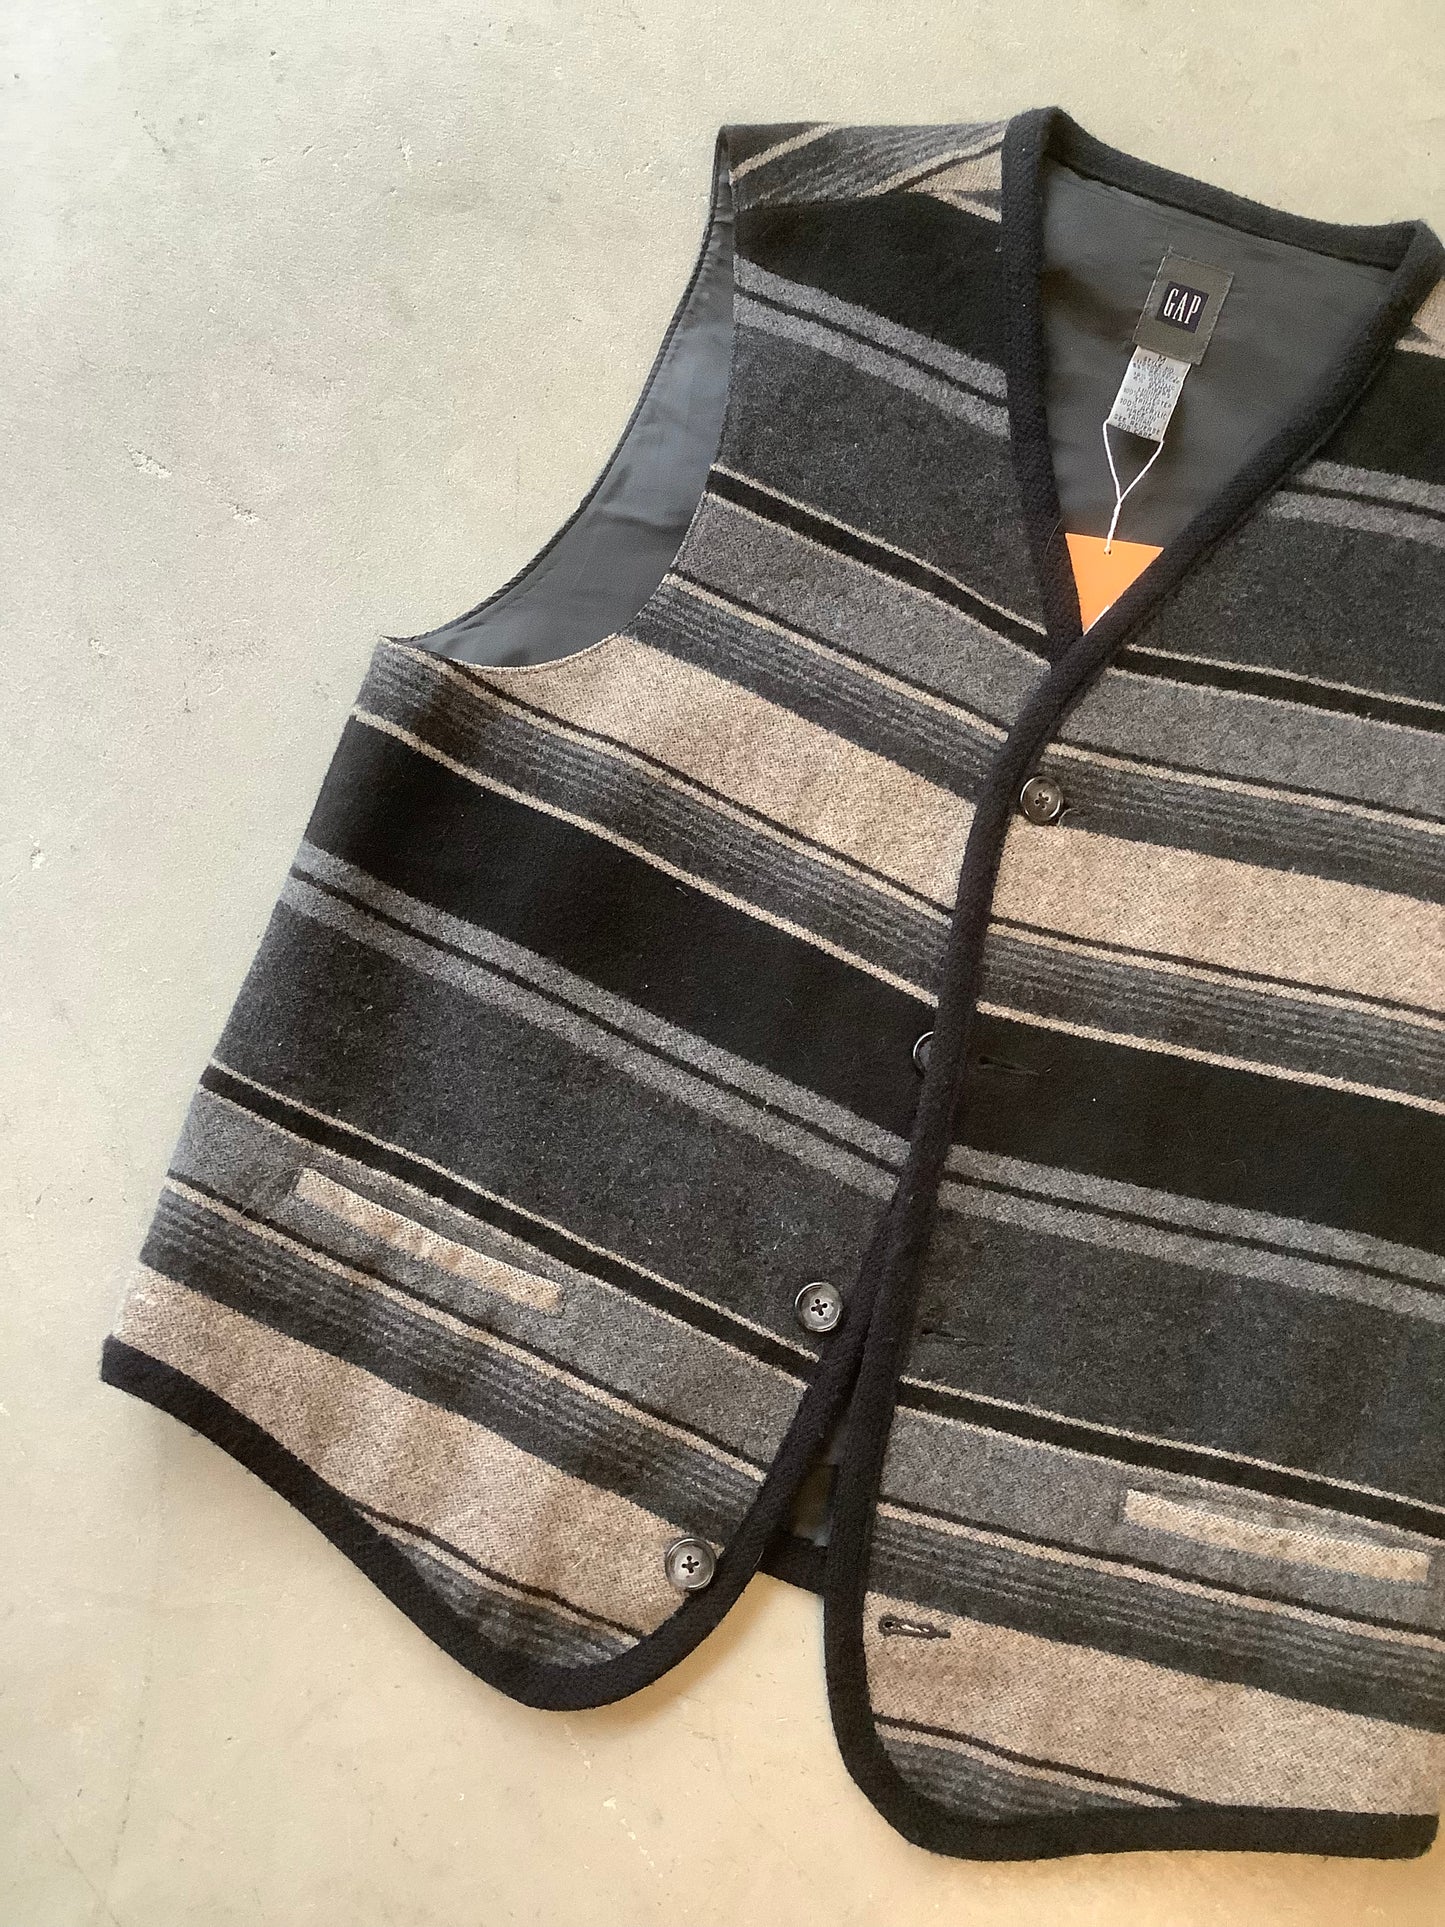 Striped wool vest